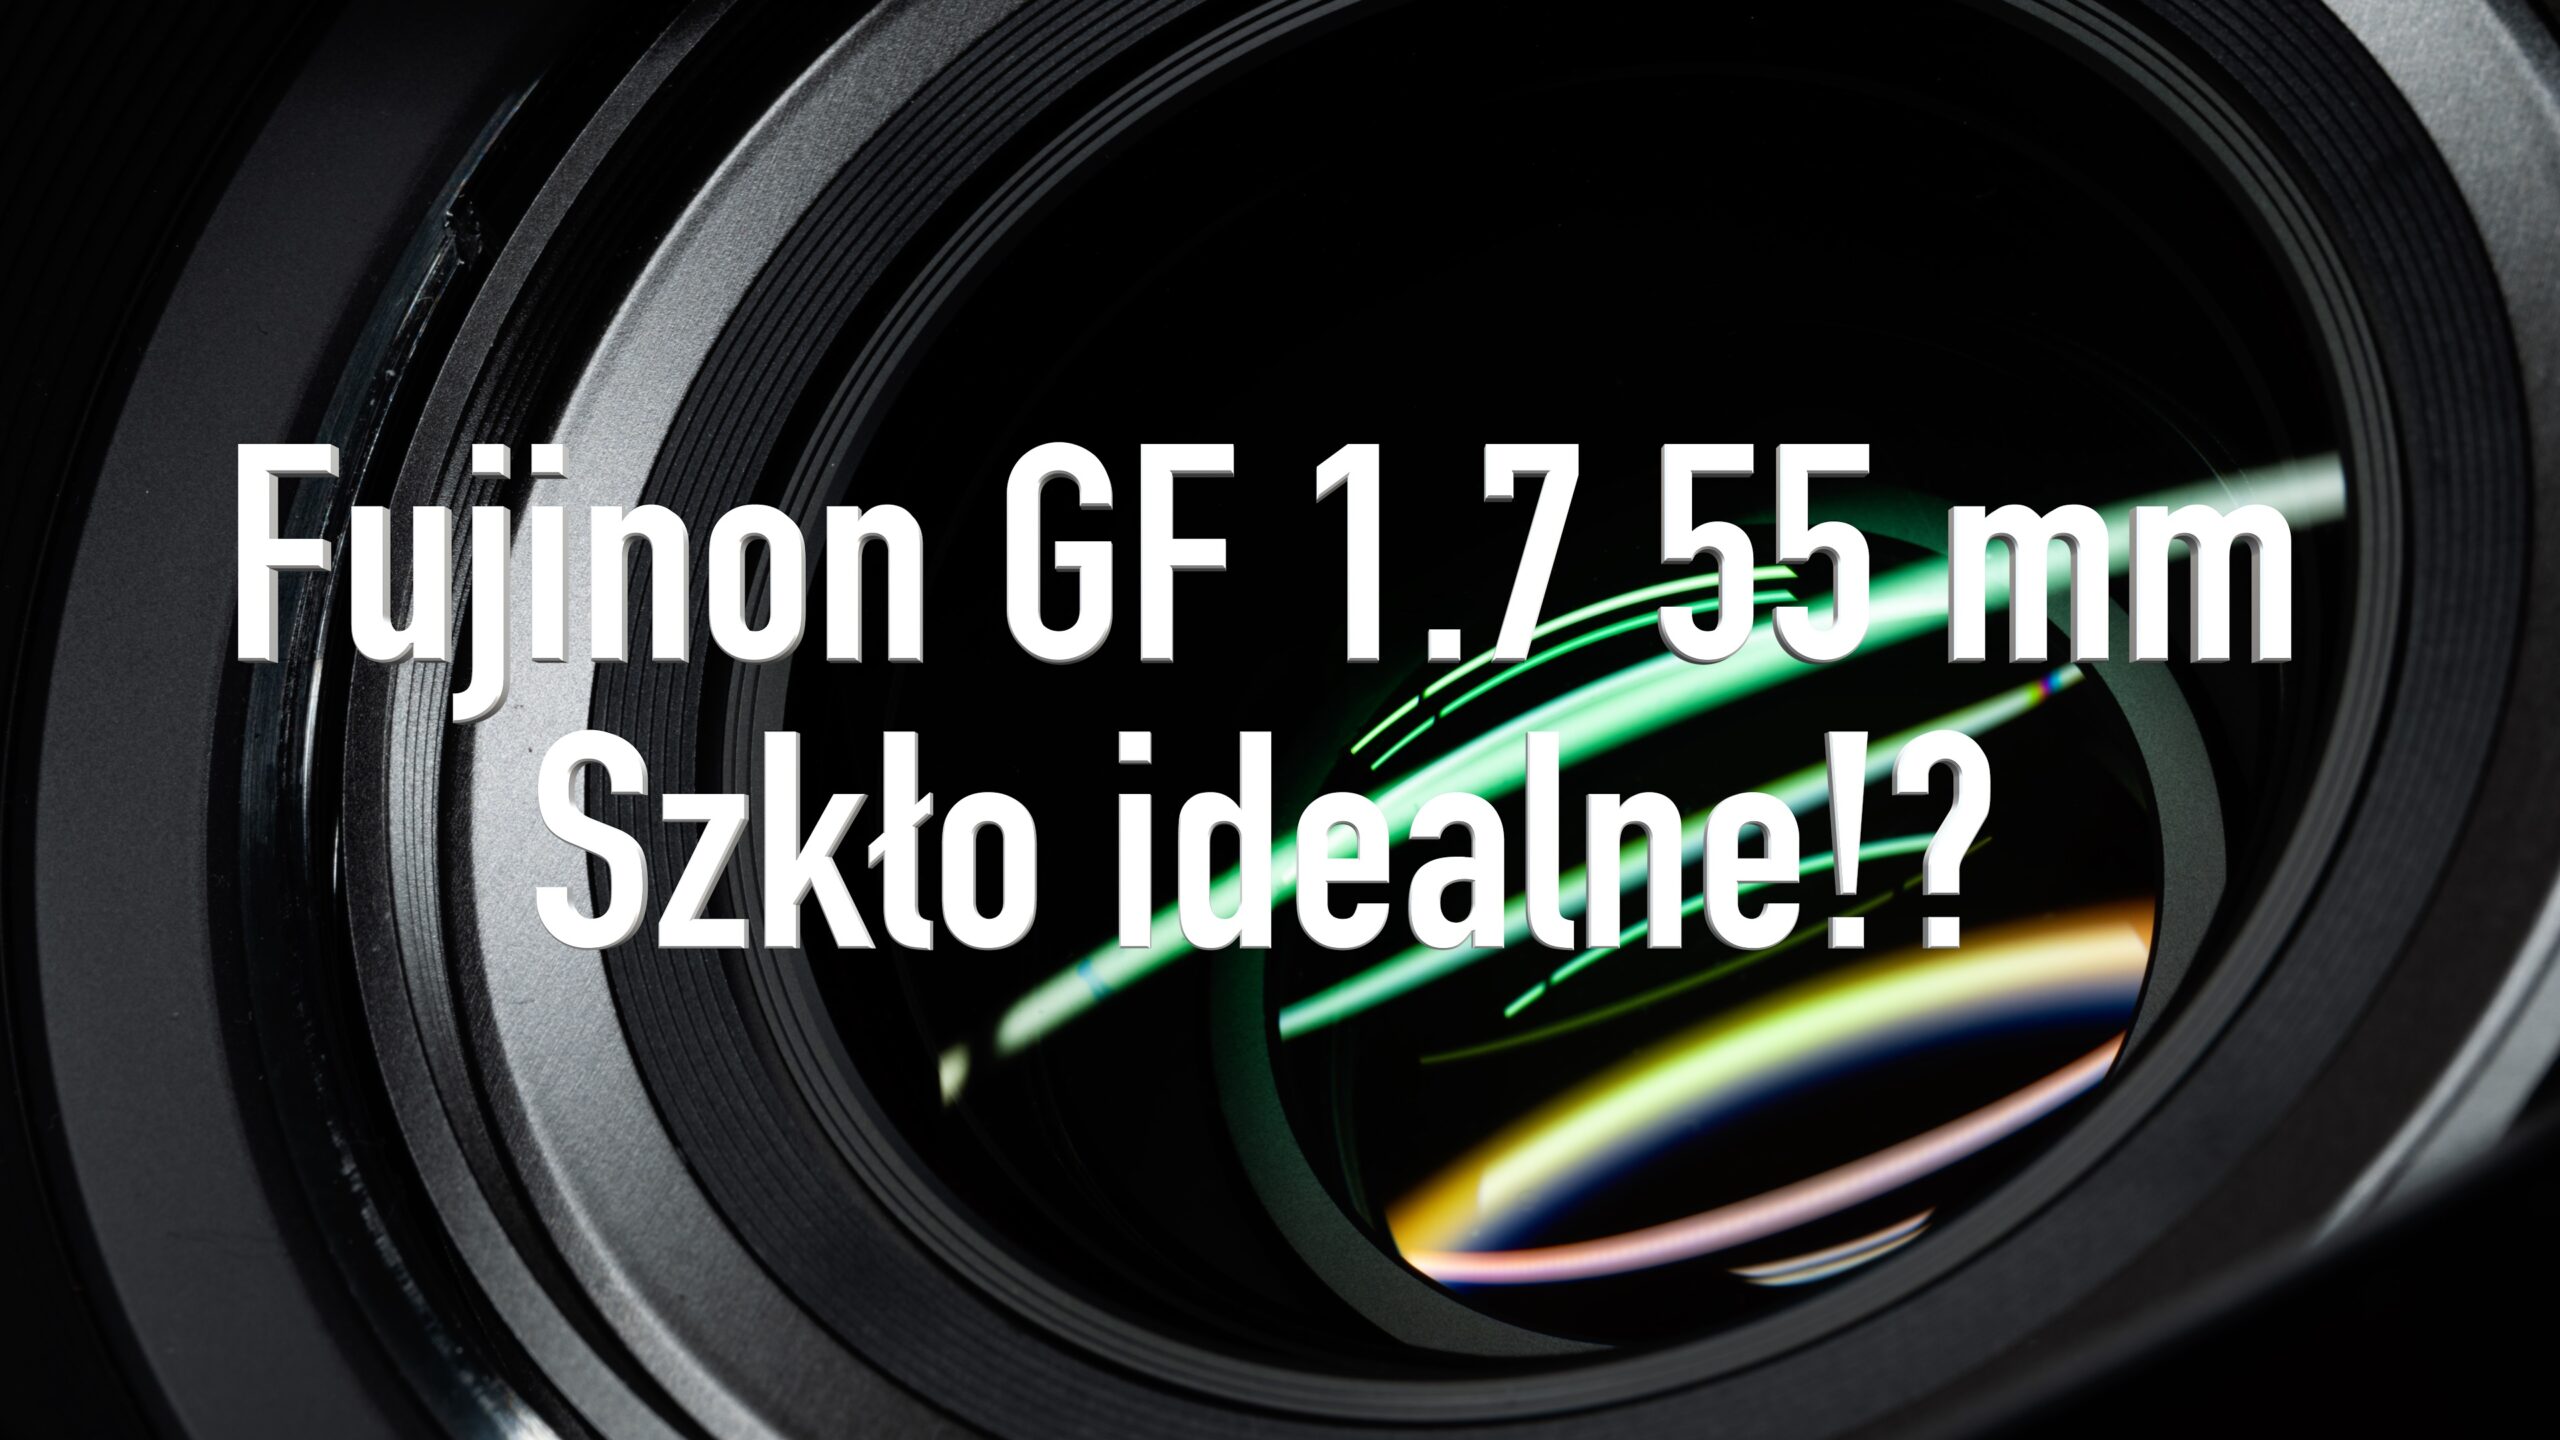 Fujinon GF 1.7 55 mm – Szkło idealne!?